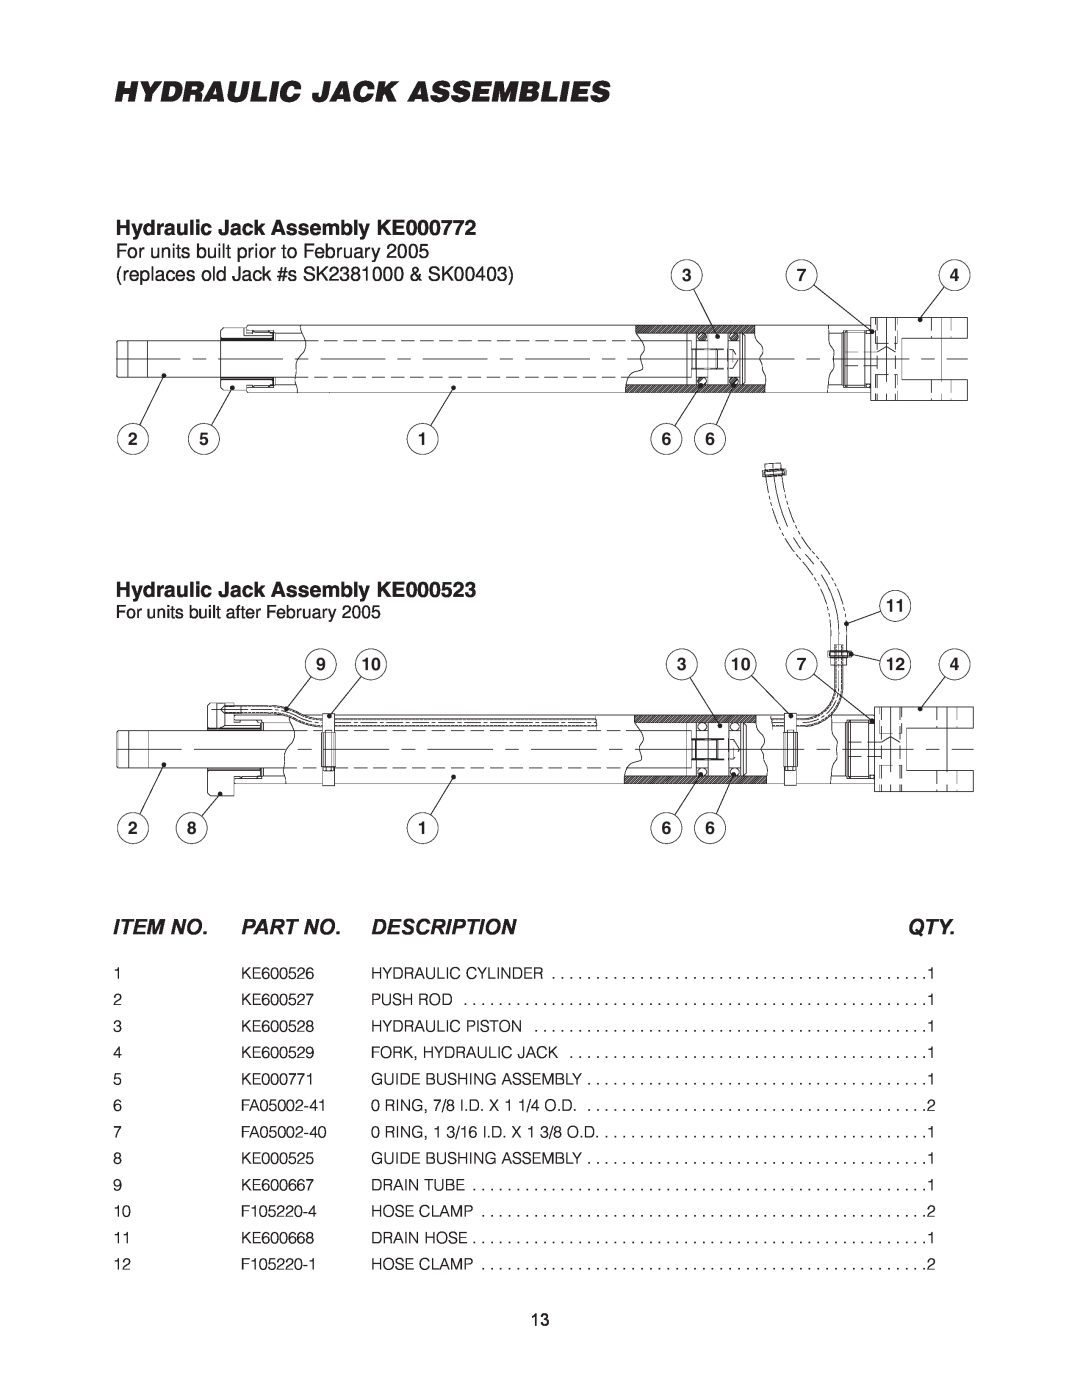 Cleveland Range SEM-30-TR Hydraulic Jack Assemblies, Hydraulic Jack Assembly KE000772, Hydraulic Jack Assembly KE000523 